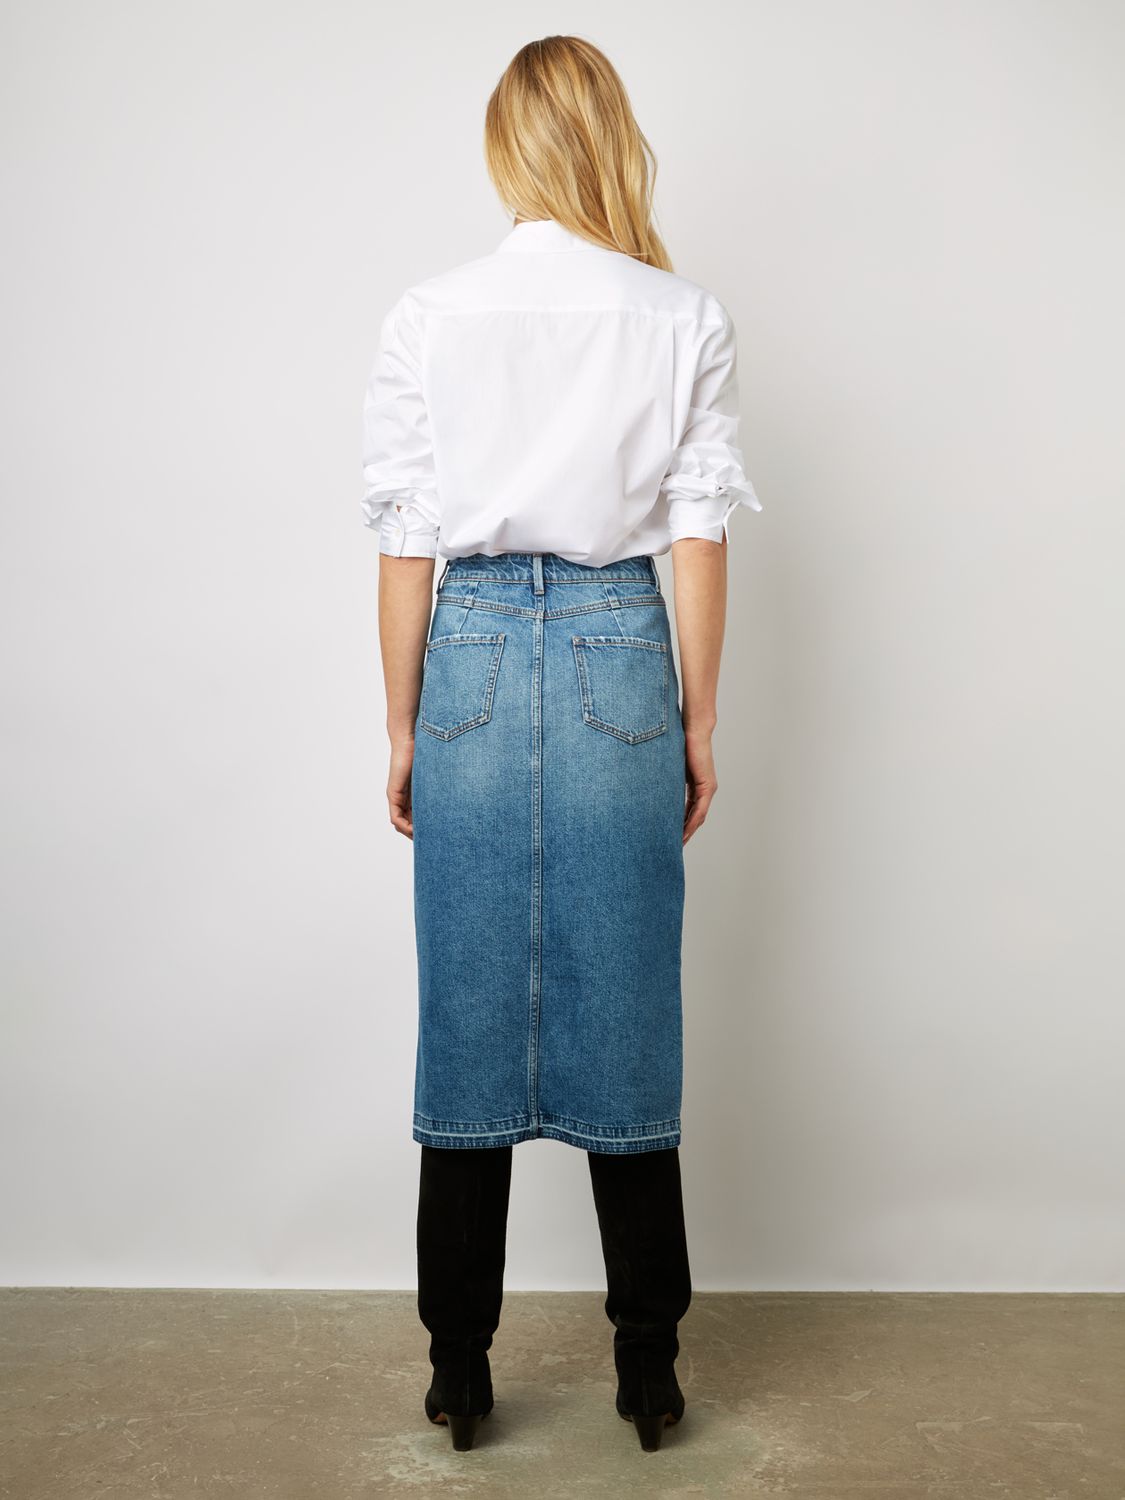 Buy Gerard Darel Deborra Denim Midi Skirt, Blue Online at johnlewis.com